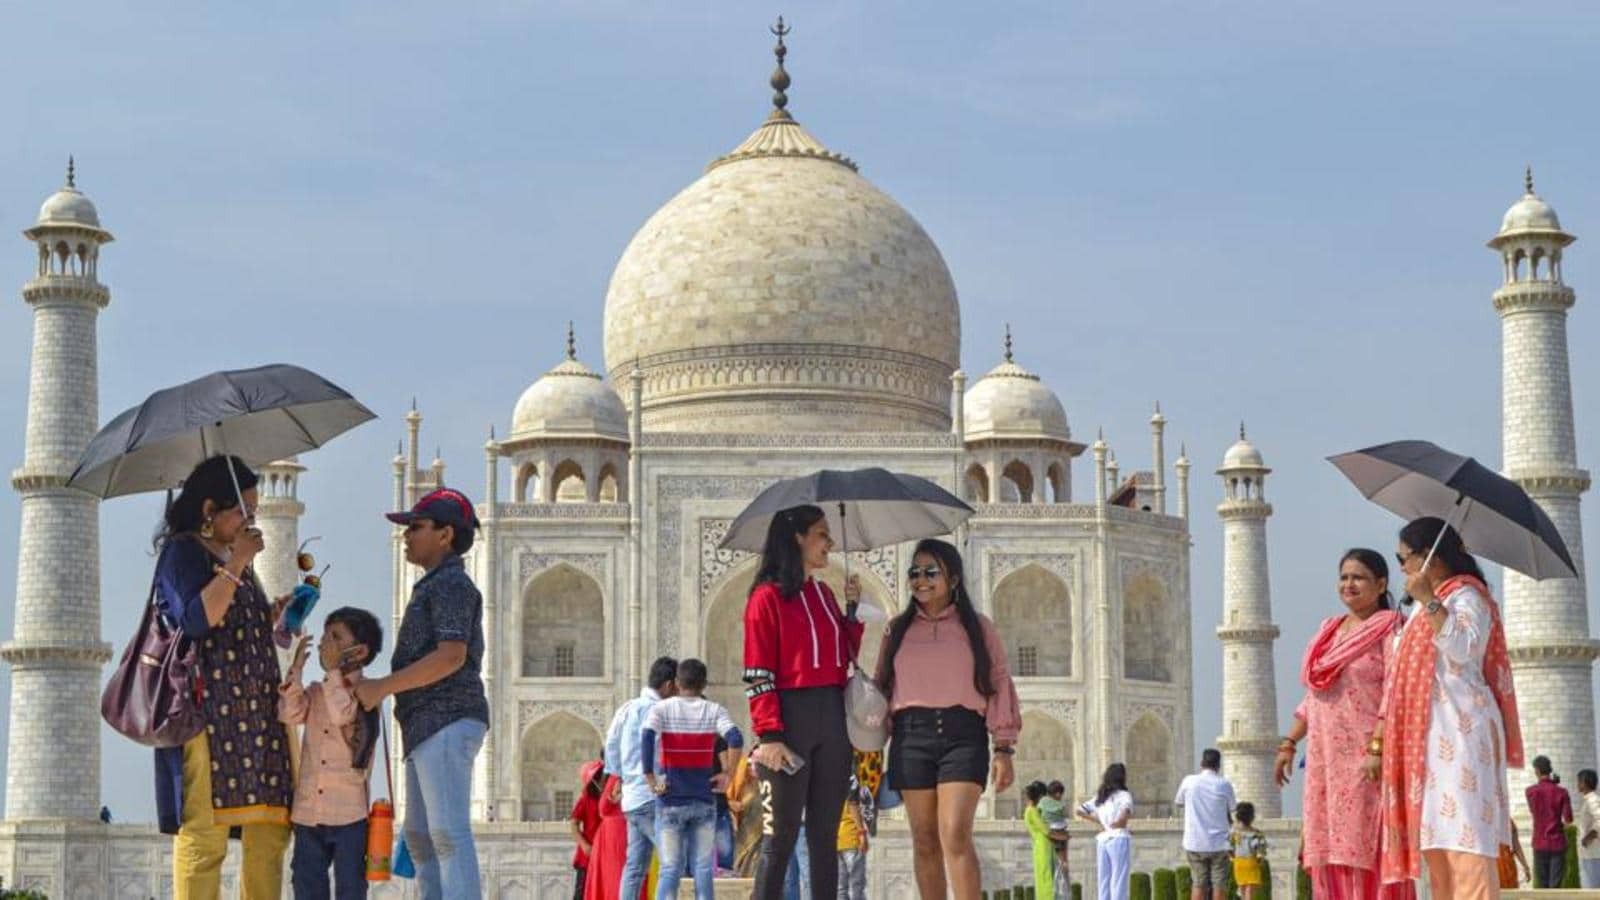 Ấn Độ - Quốc gia đa tôn giáo và đông dân nhất thế giới